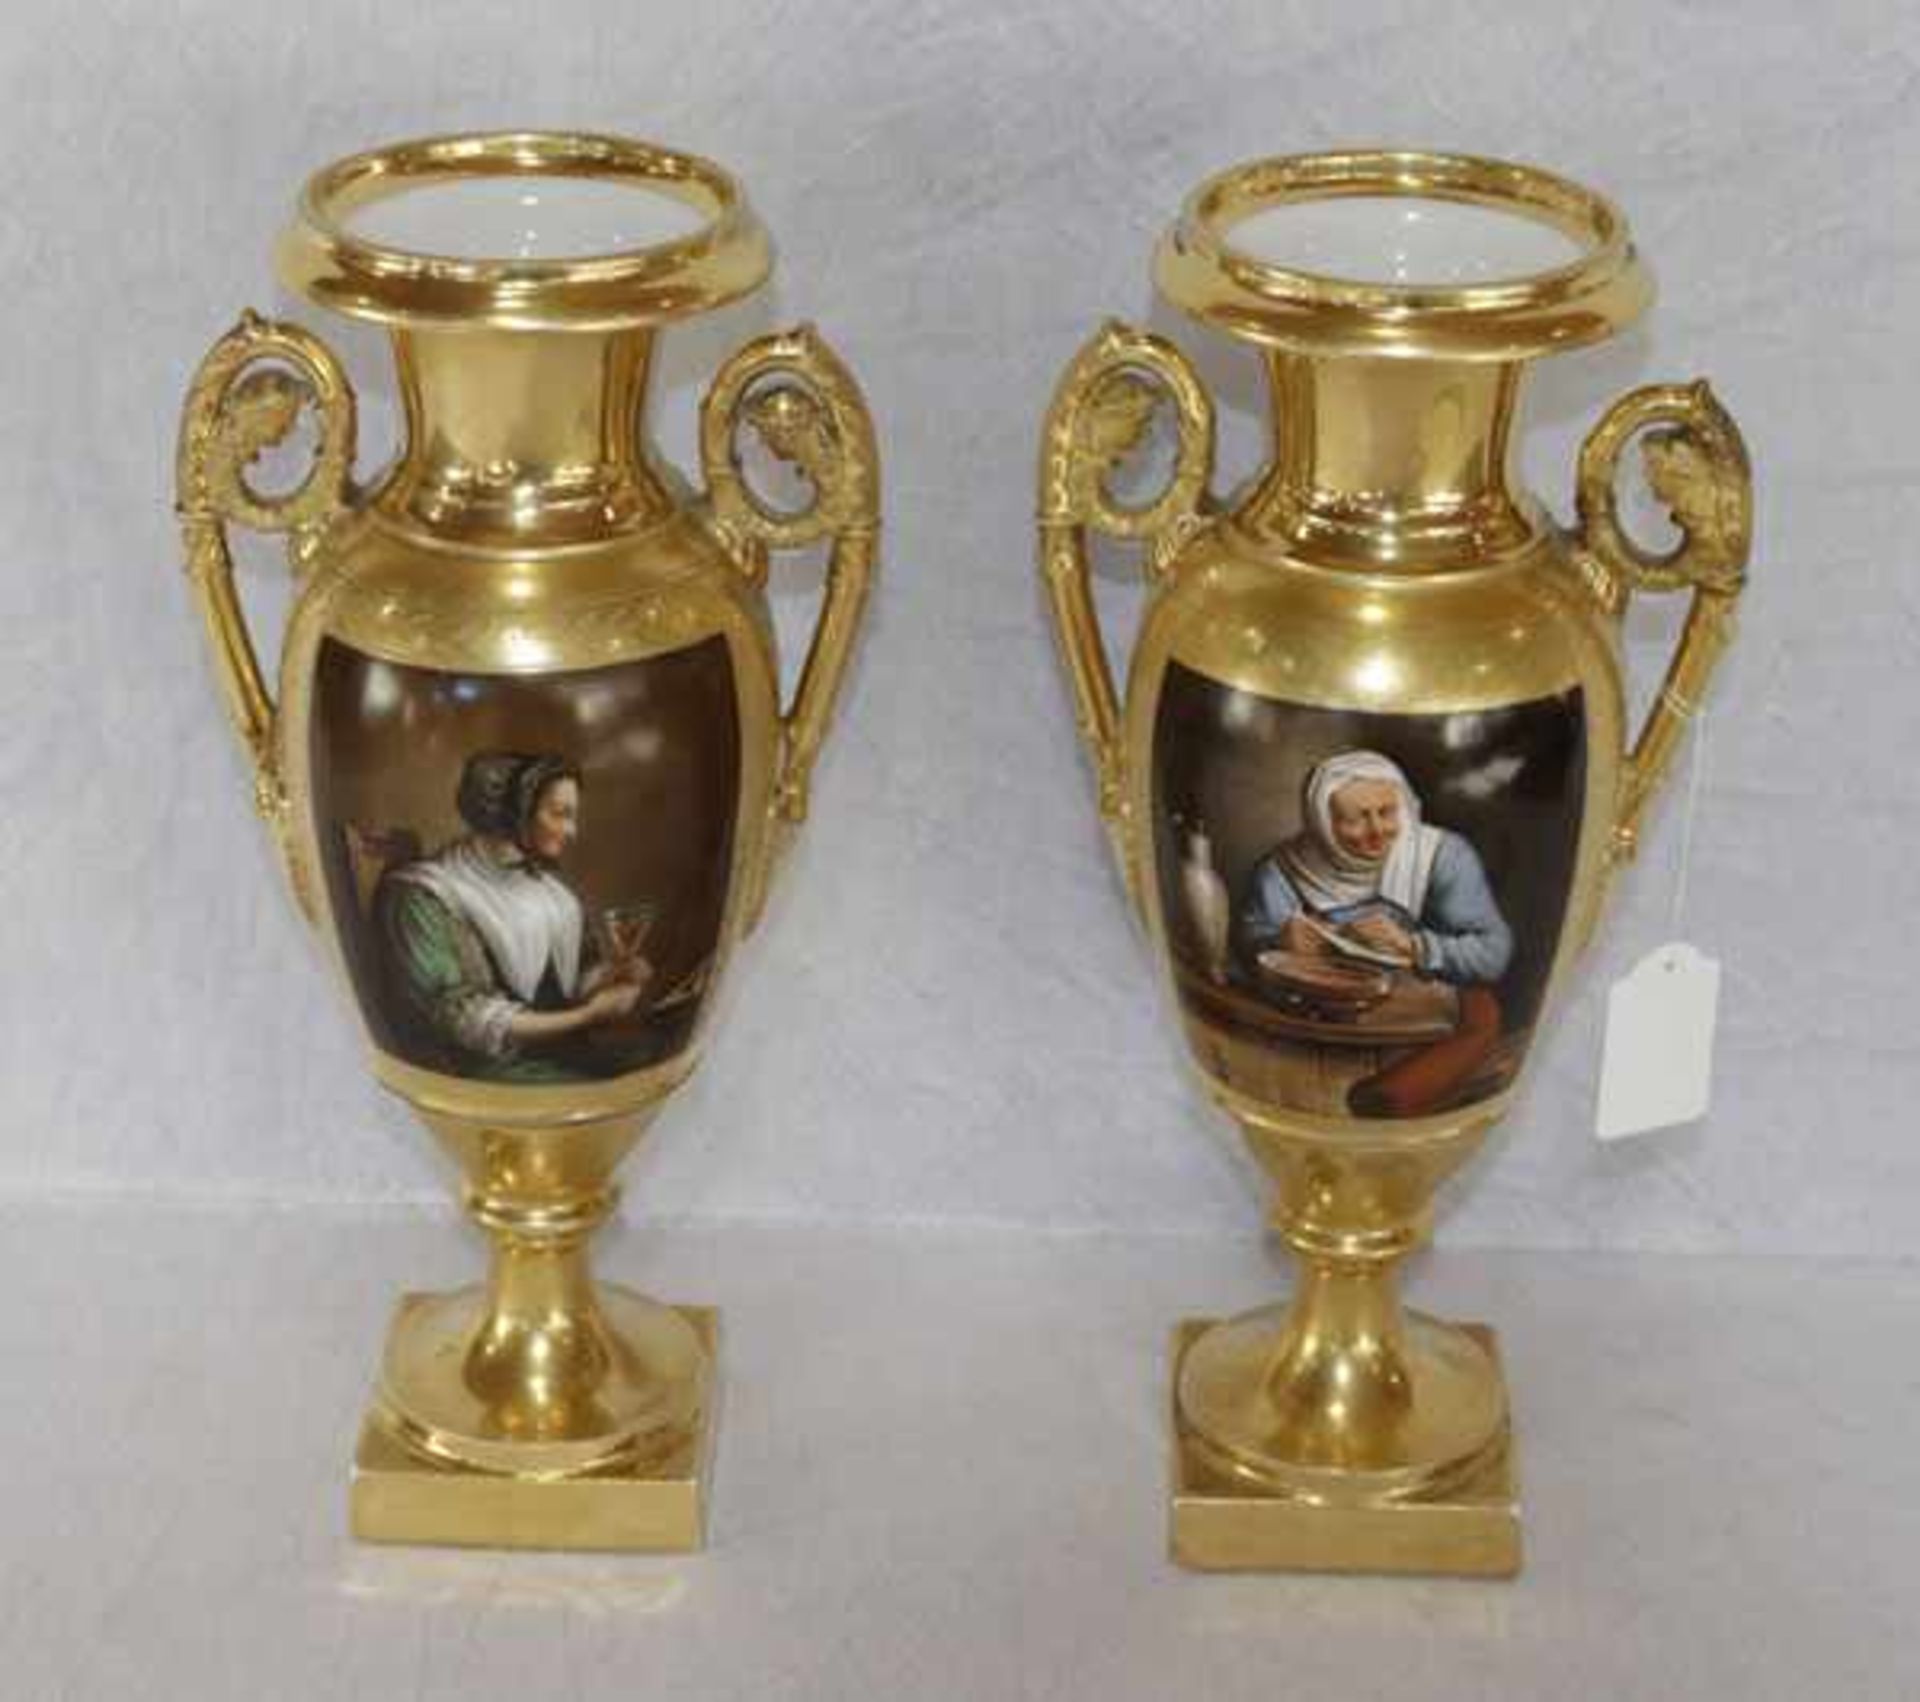 Paar dekorative französische Amphorenvasen, vergoldet mit radiertem Ornamentdekor, schauseitig mit